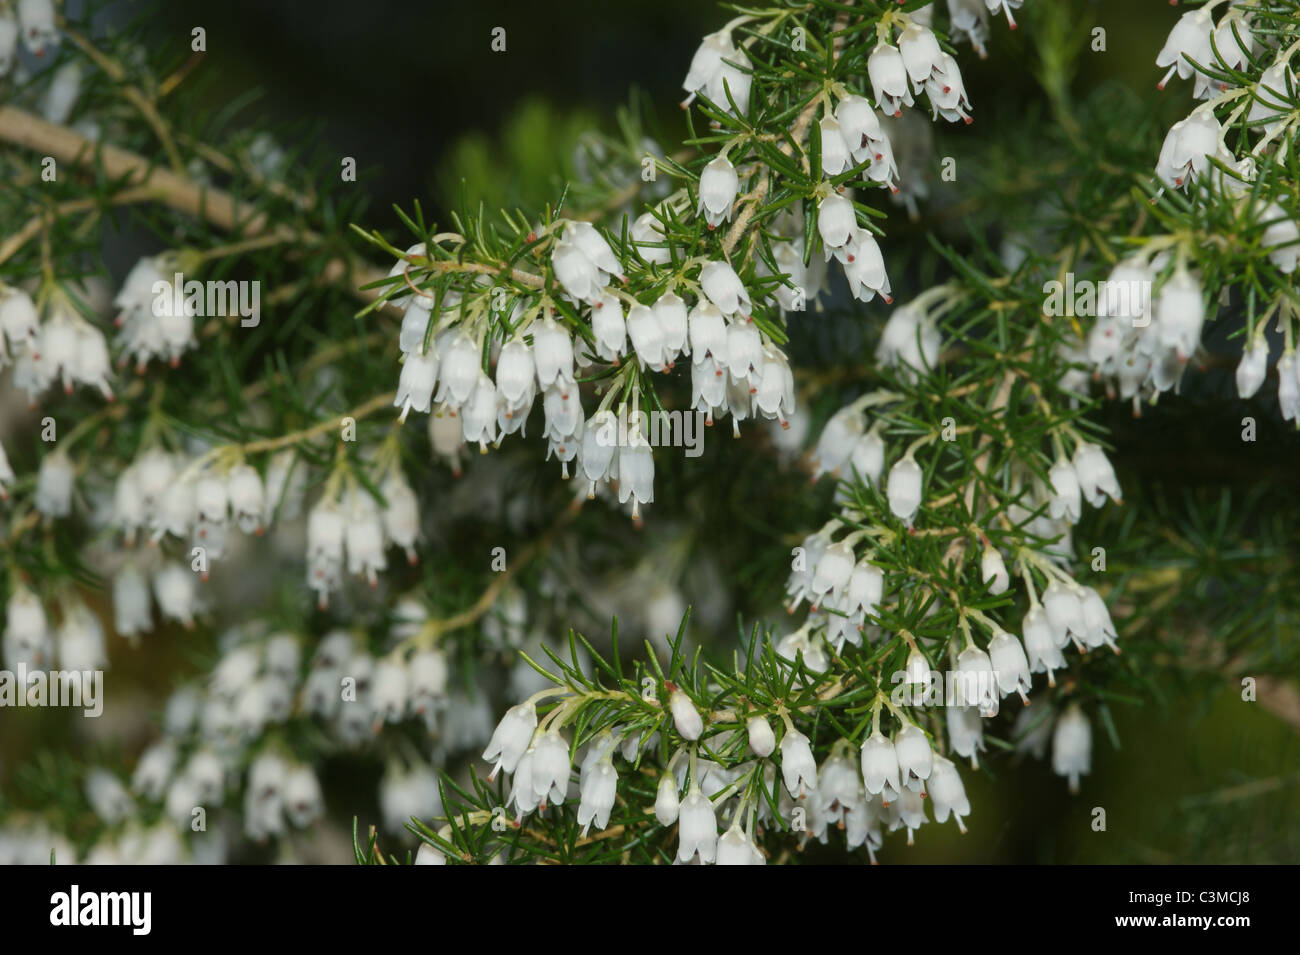 Erica arborea 'Alpina' Stock Photo